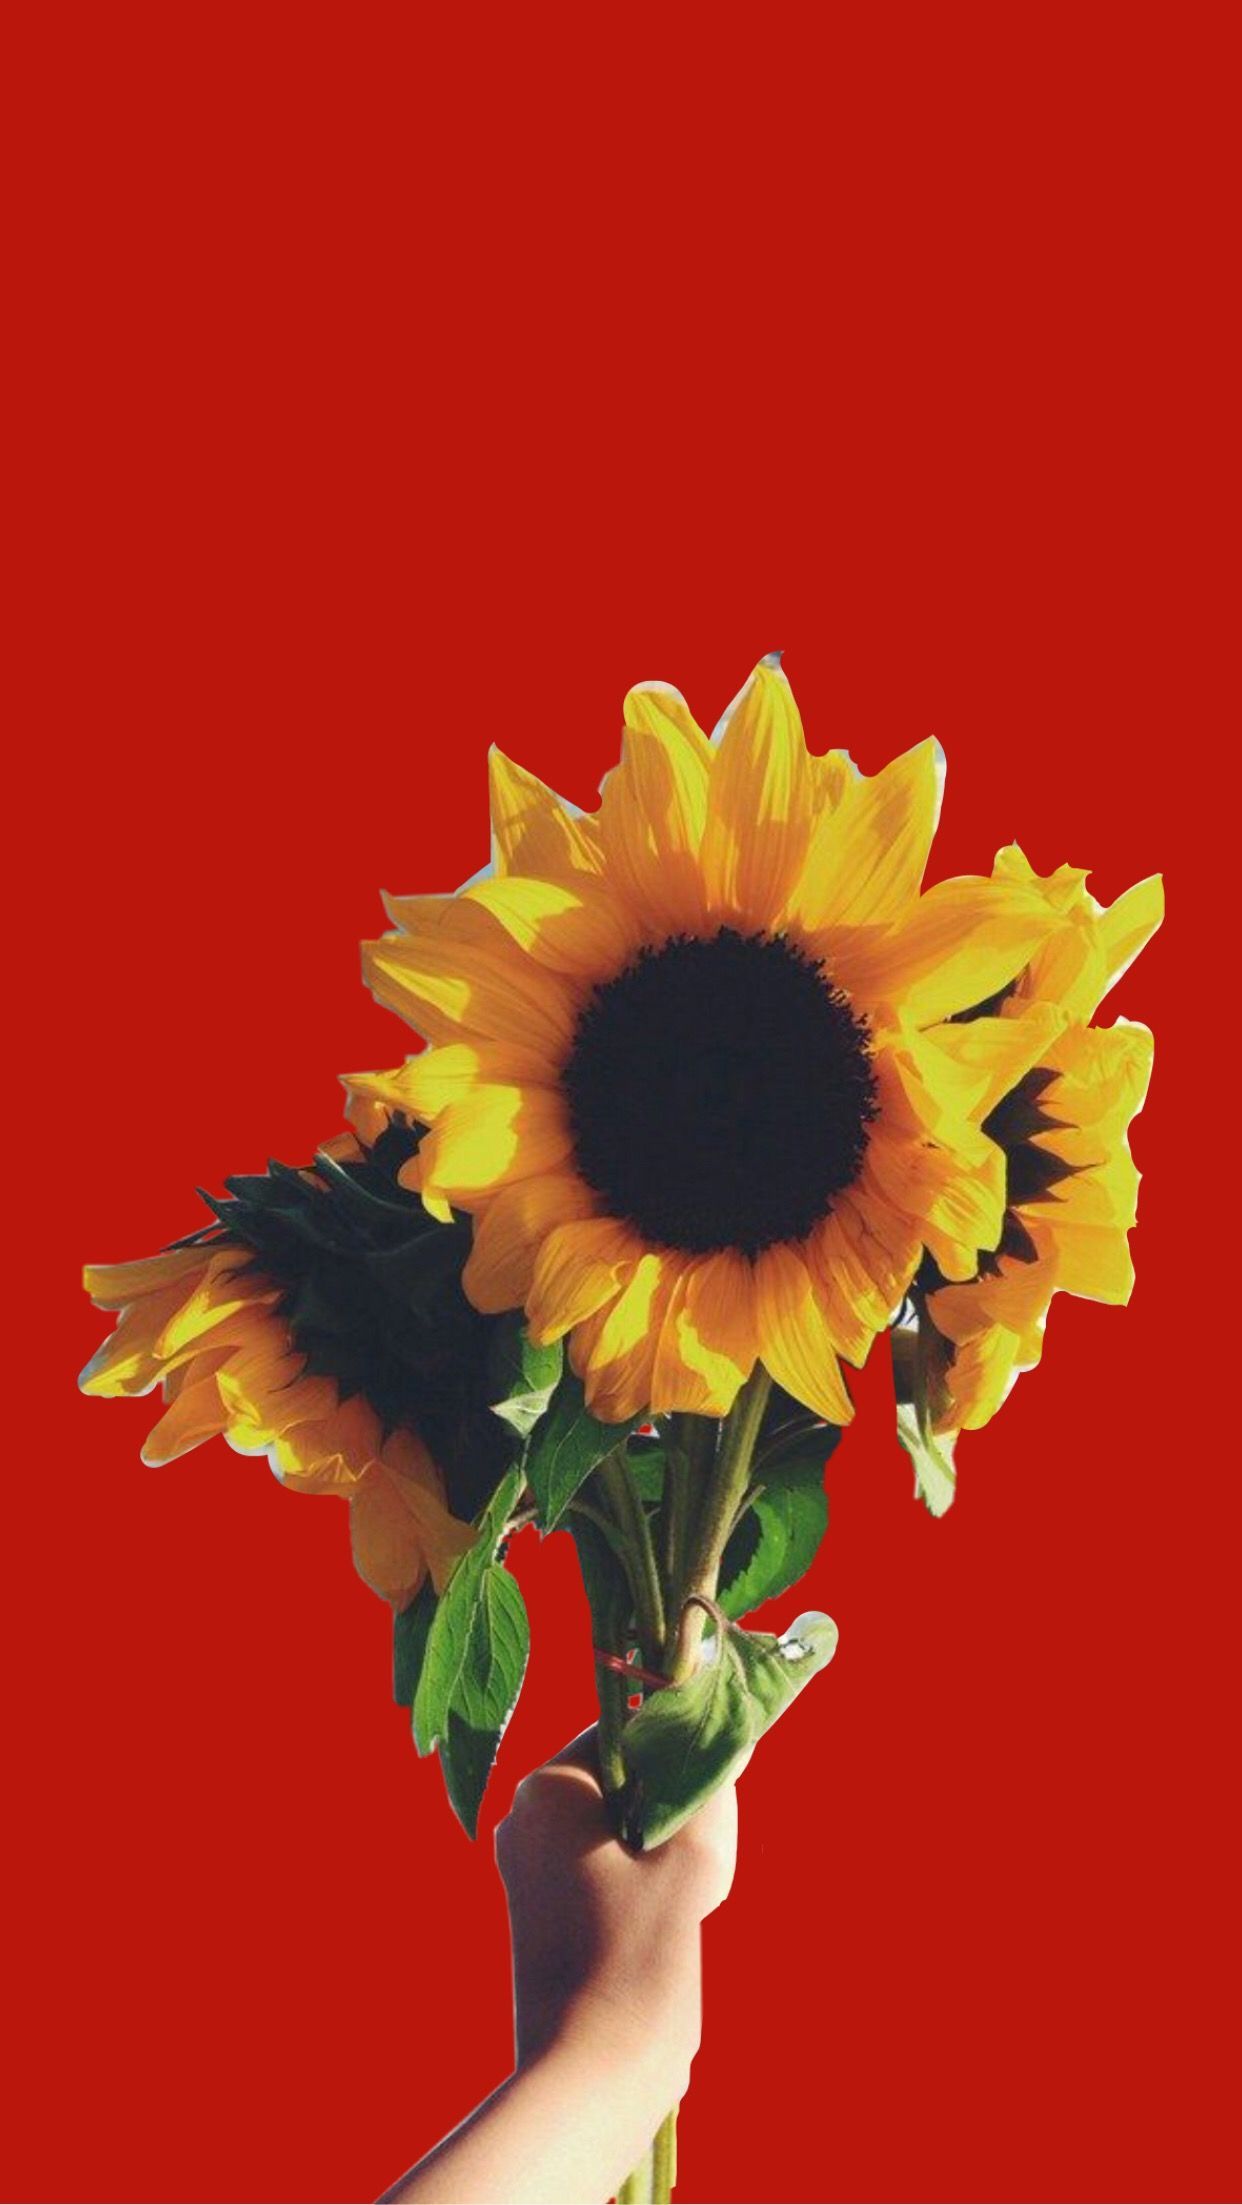 Red Lockscreen / Wallpaper / Background Sunflower Aesthetic